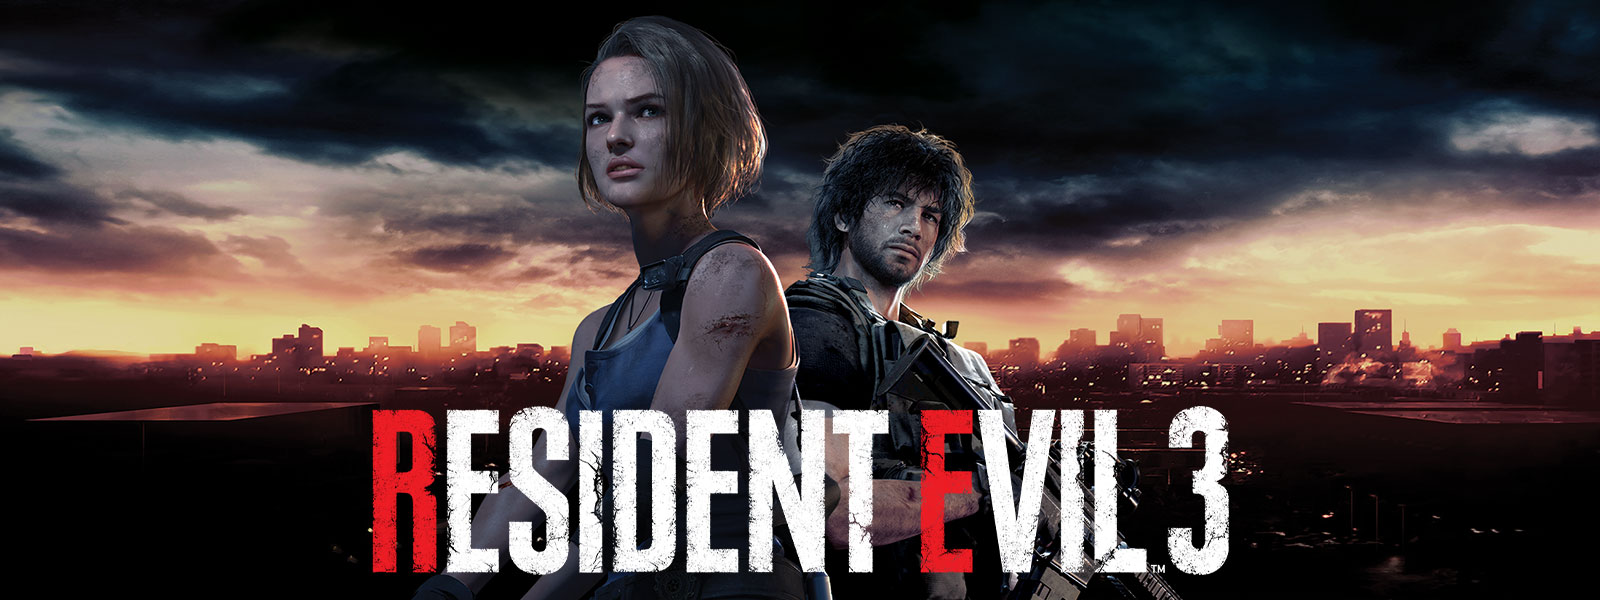 Resident Evil 3, Jill Valentine et Carlos Oliveira sont debout, la ligne d'horizon de Raccoon City derrière eux